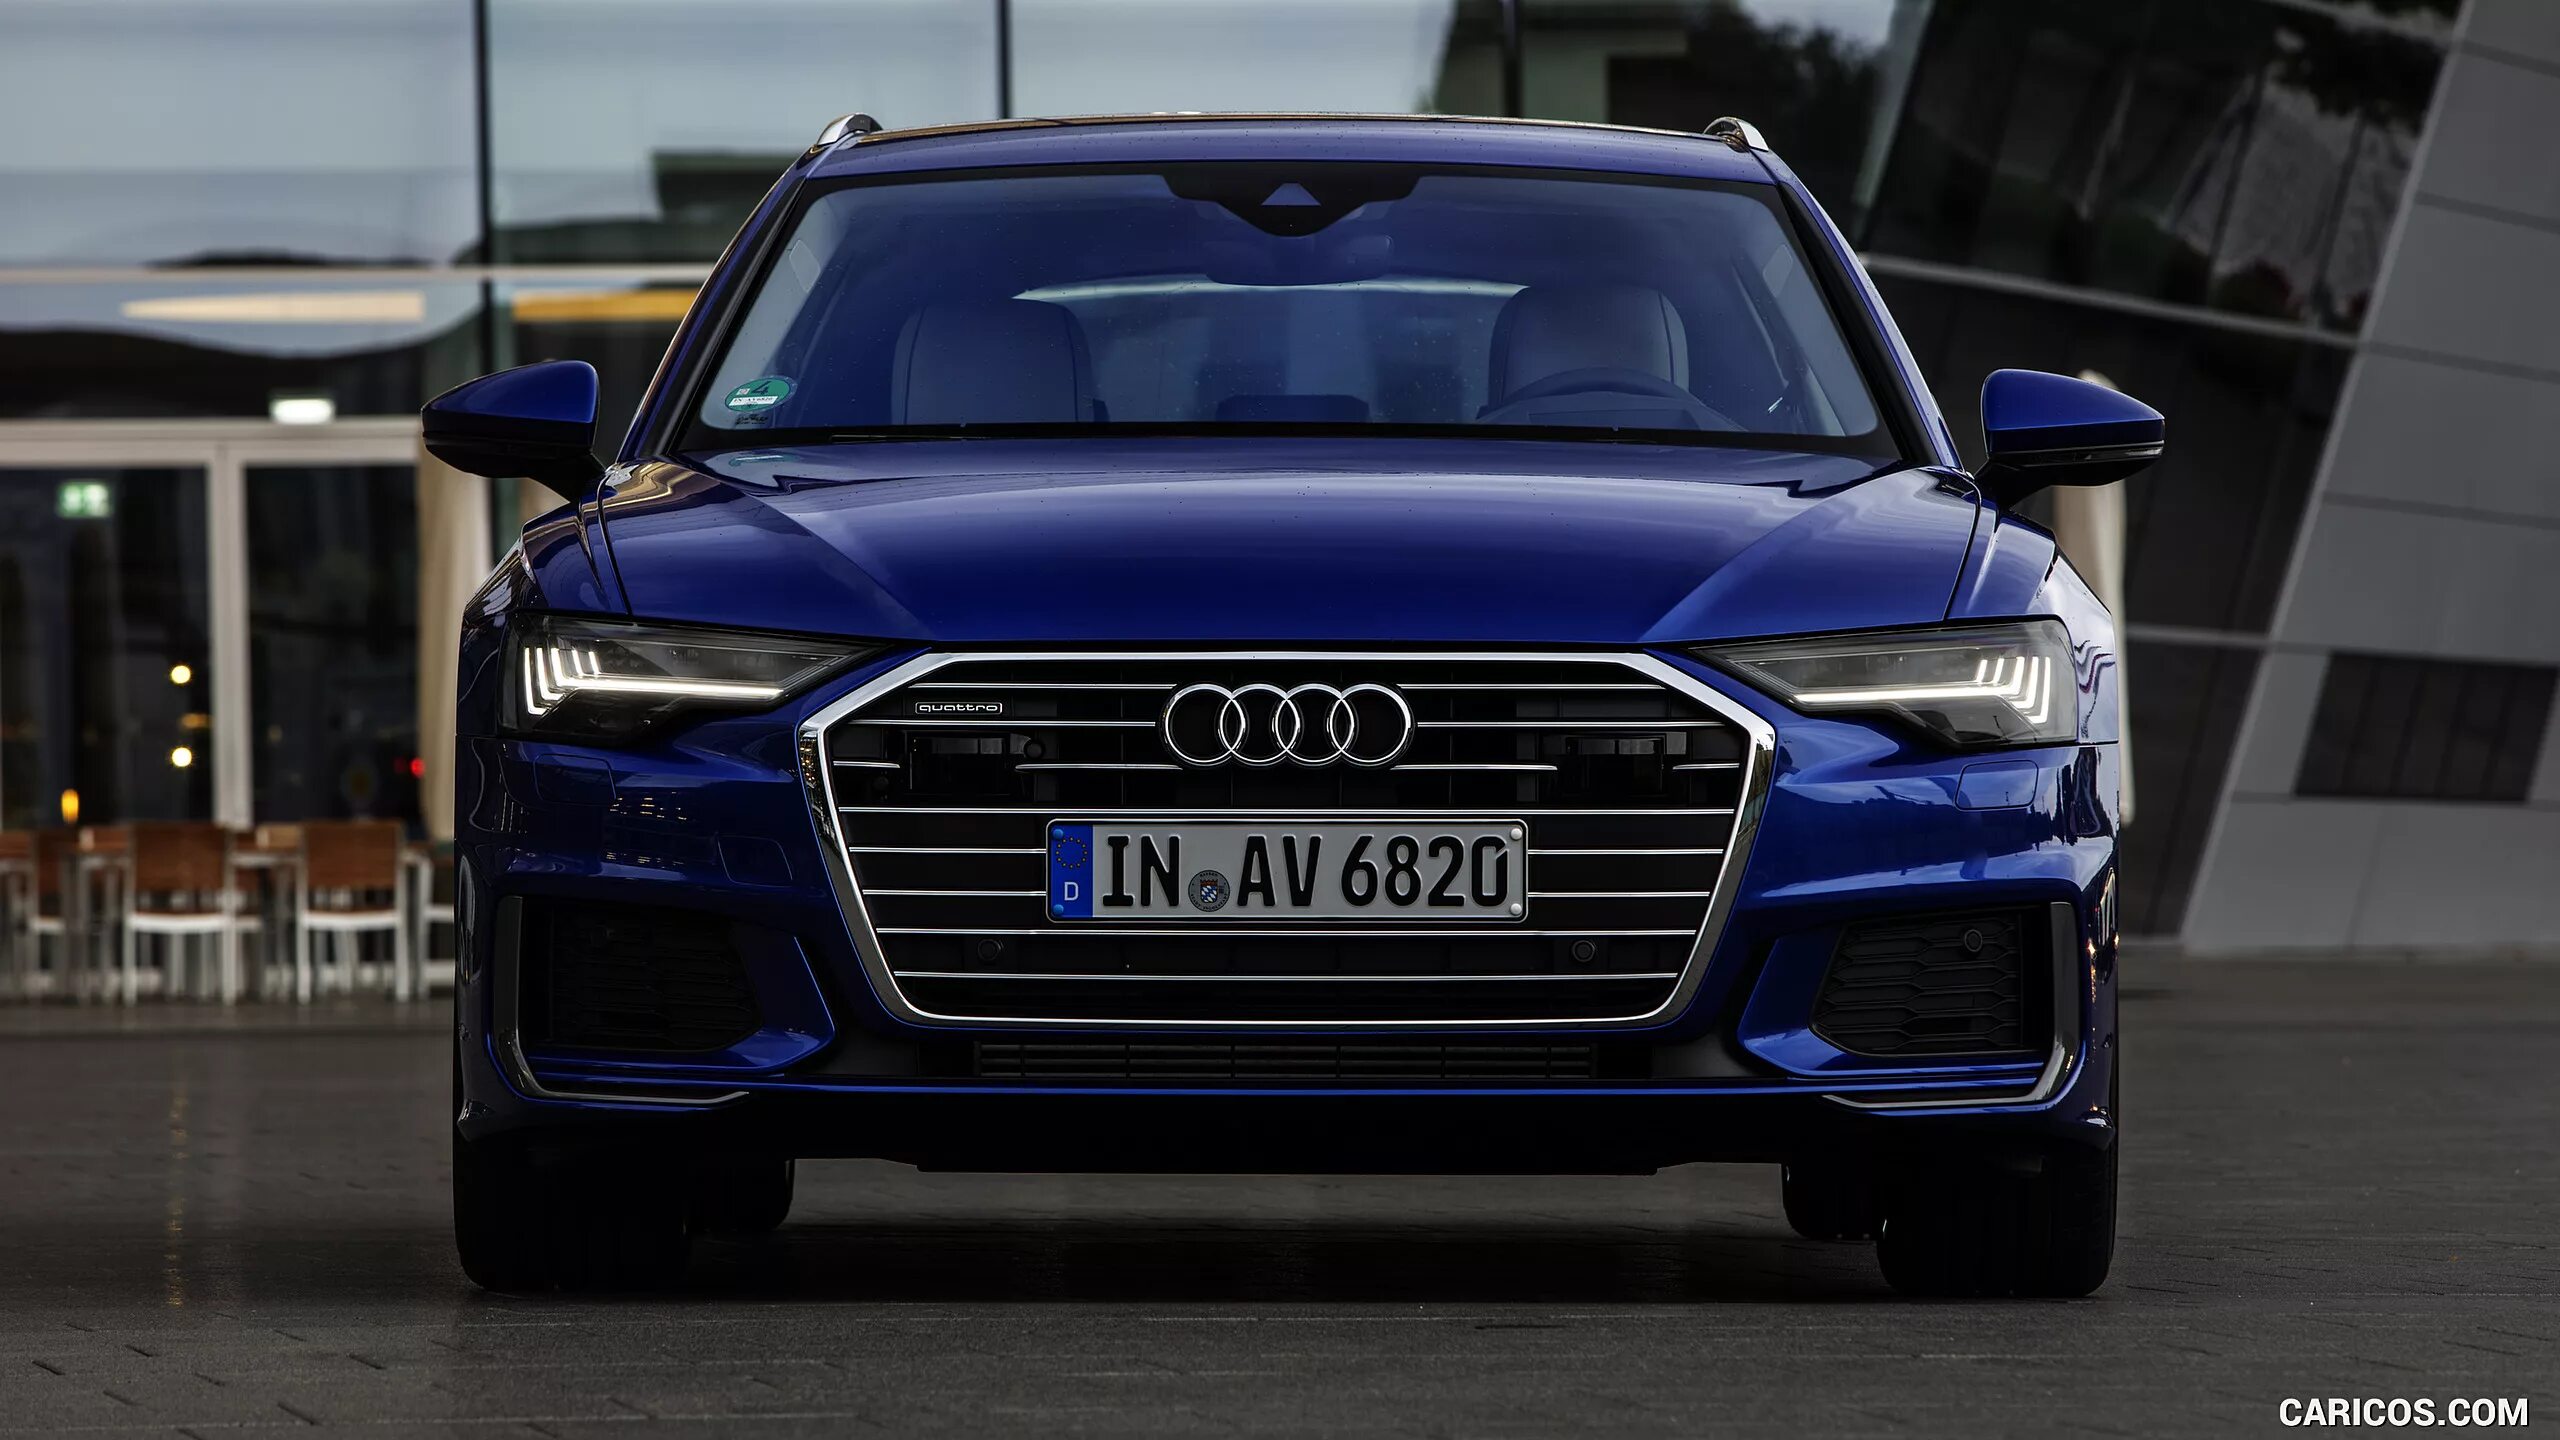 Купить ауди 2019. Audi a6 2019. Audi a6 синяя. Audi a6 avant 2019 Wallpaper 4k. A6 Audi 2019 с матричными фарами.